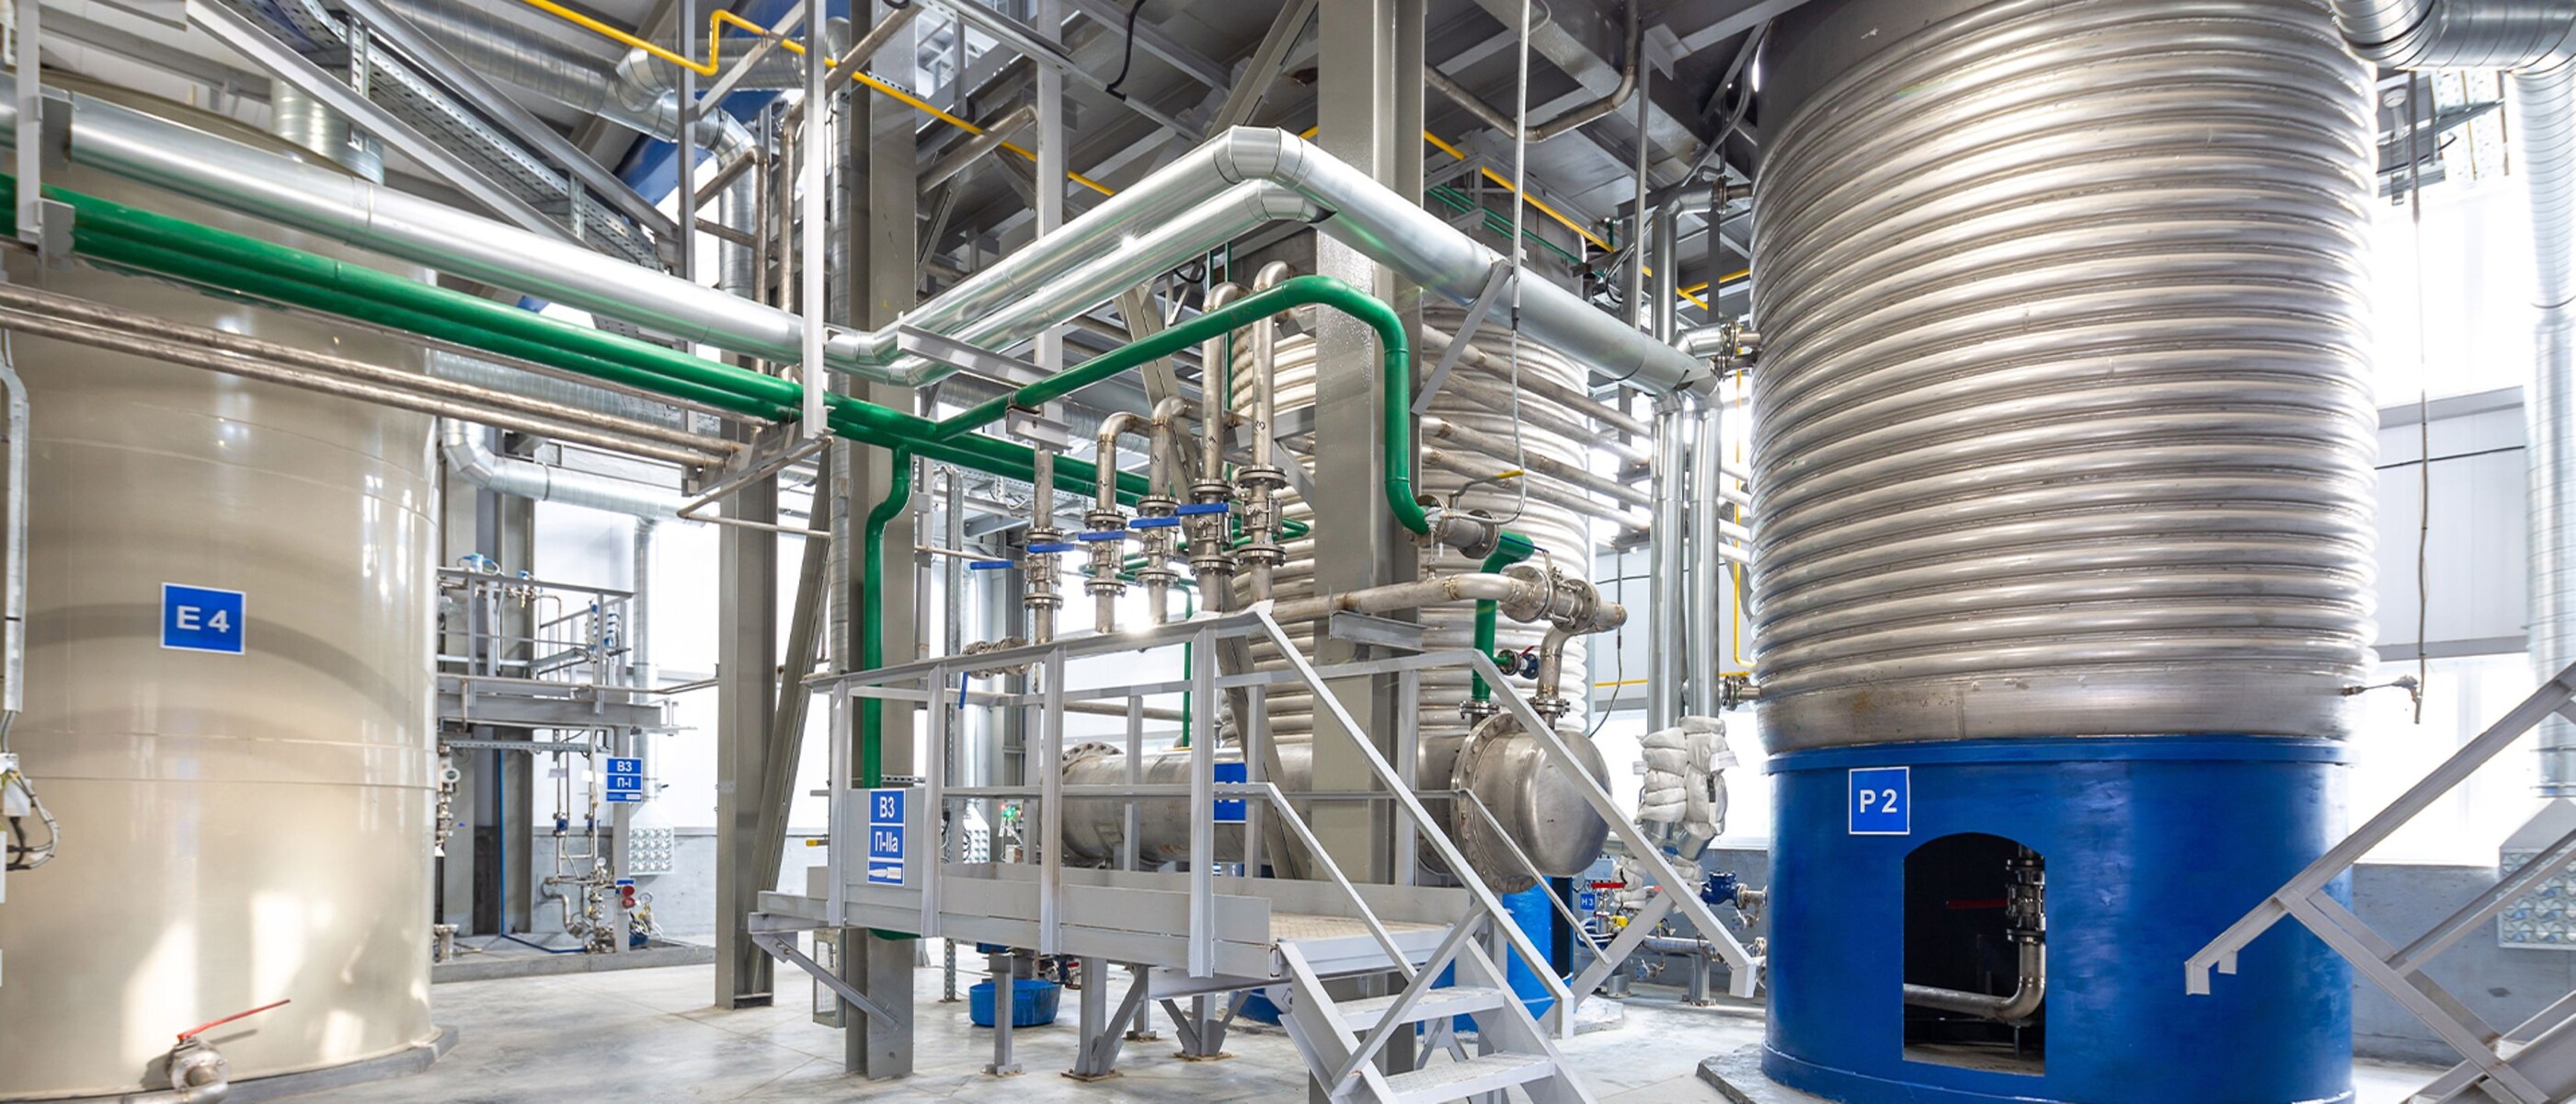 消費性化學用品設施中的大型設備和天花板管道